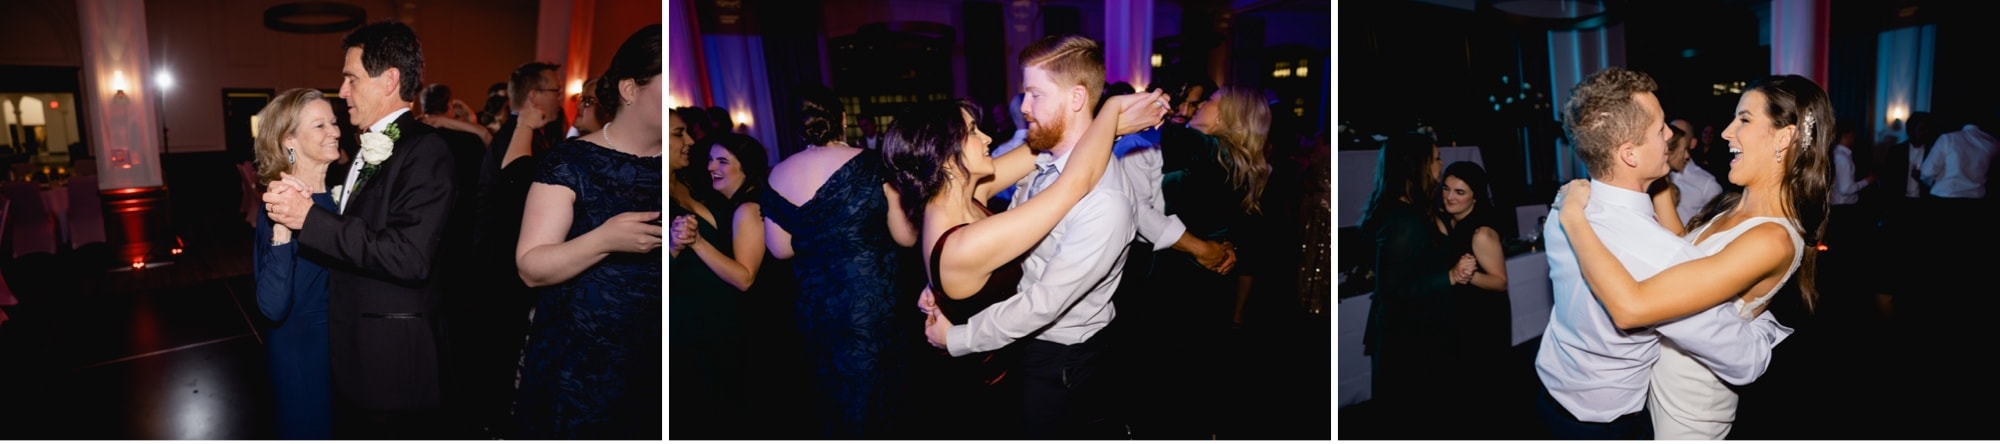 64 dancing photos des moines wedding reception